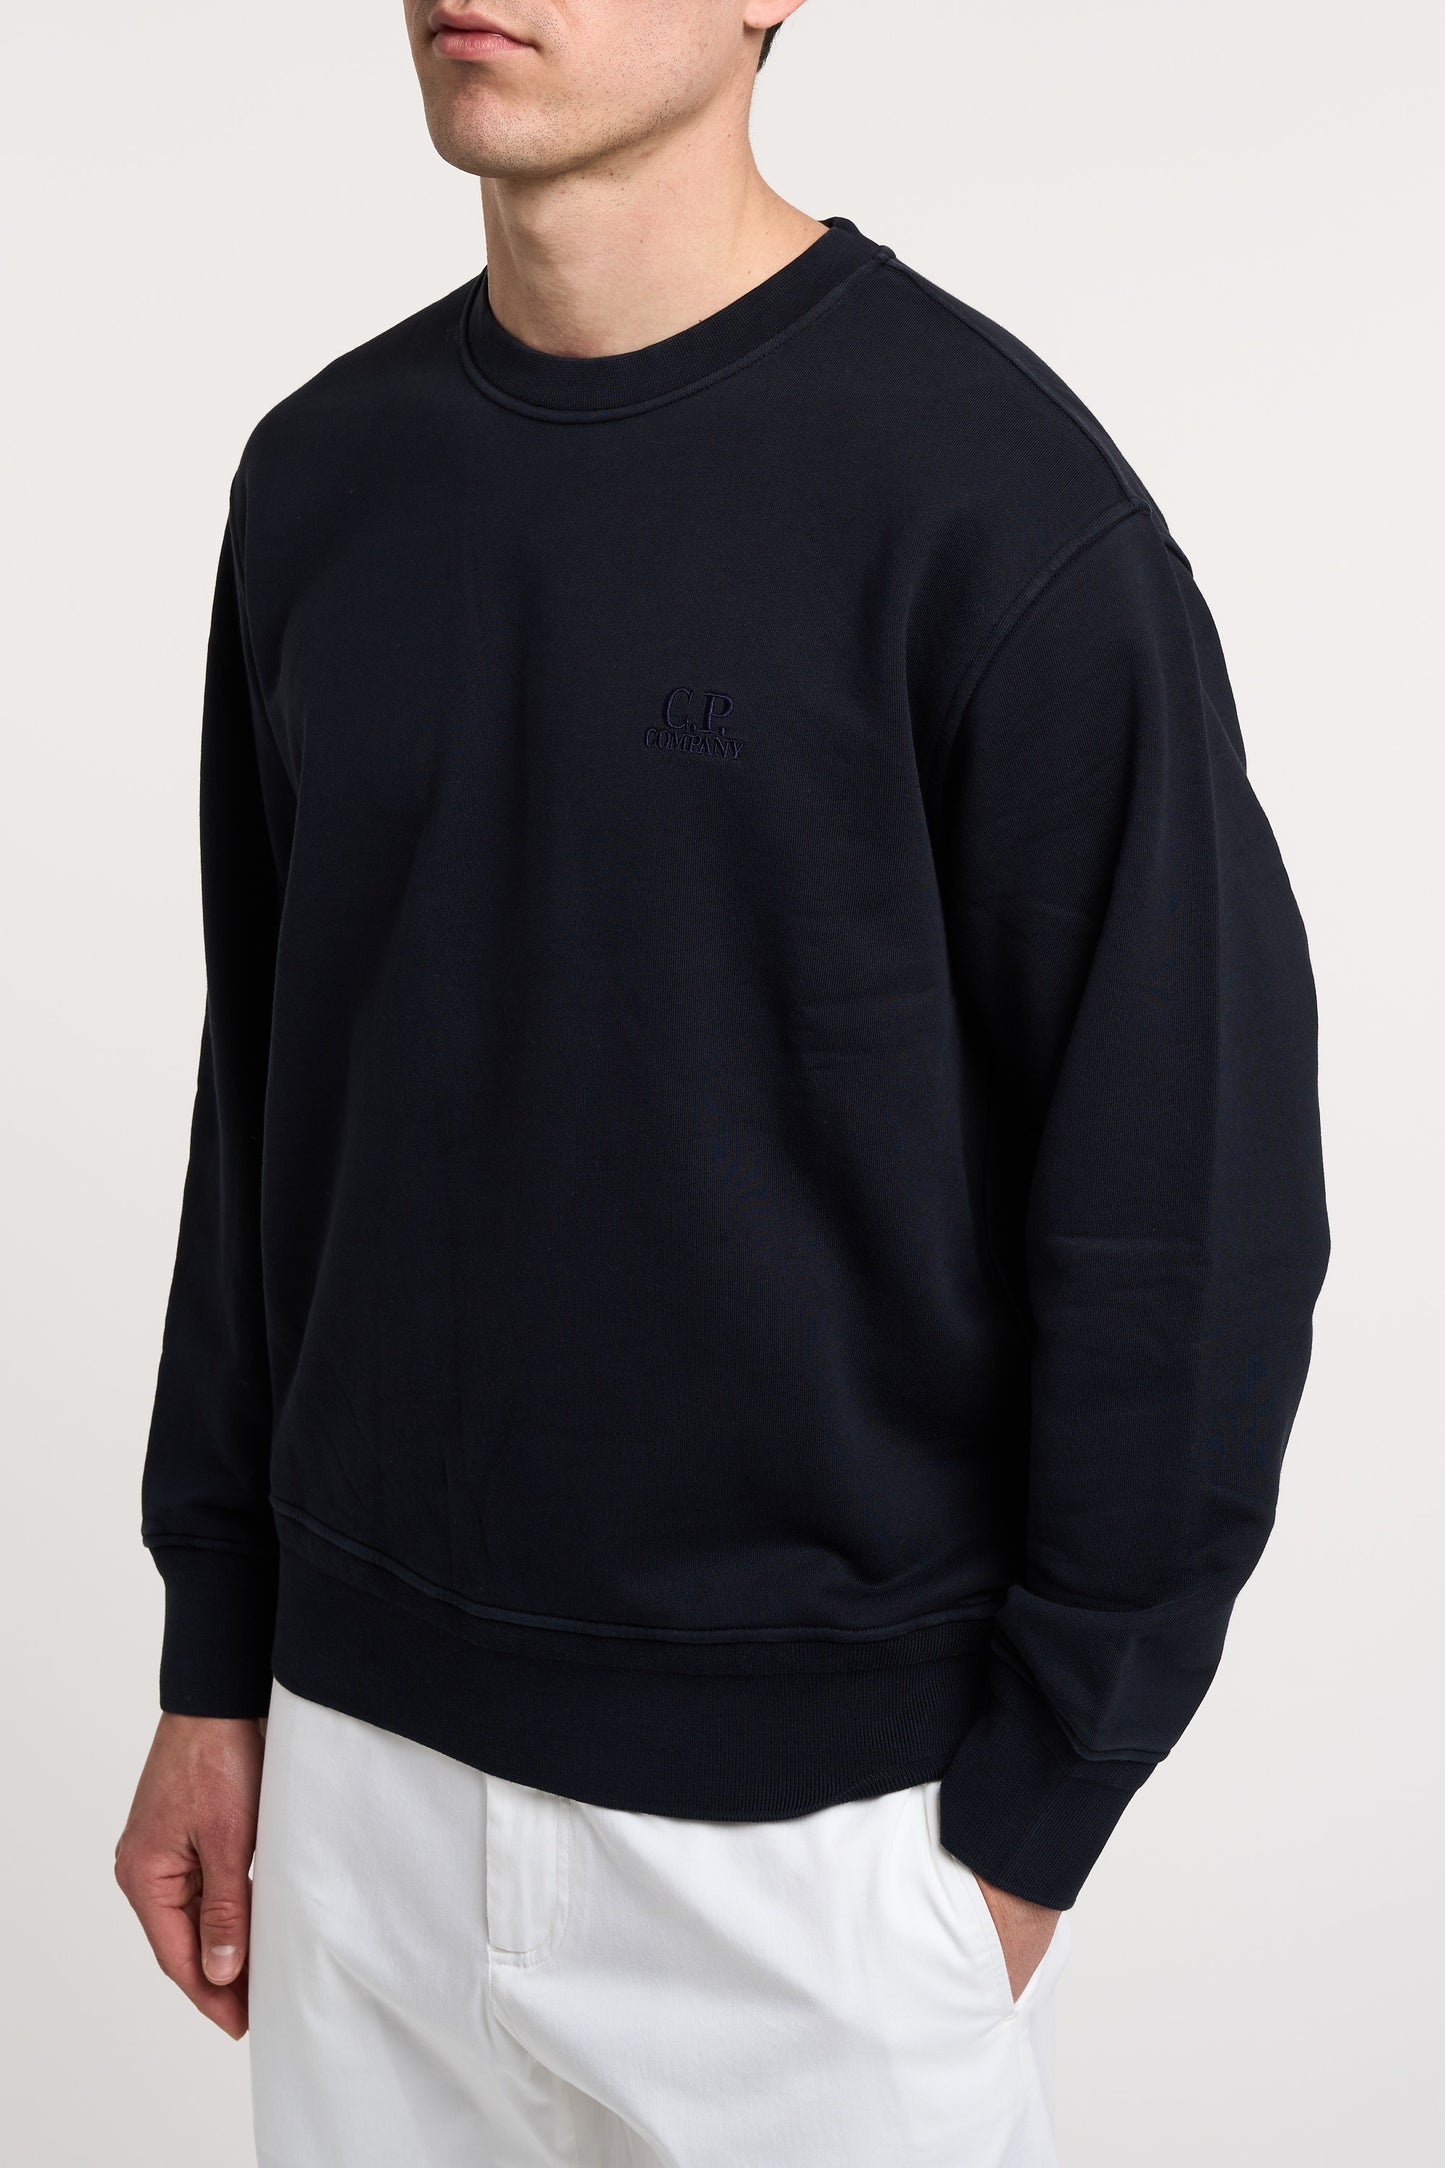  C.p. Company Crewneck Sweatshirt 100% Co Multicolor Blu Uomo - 2